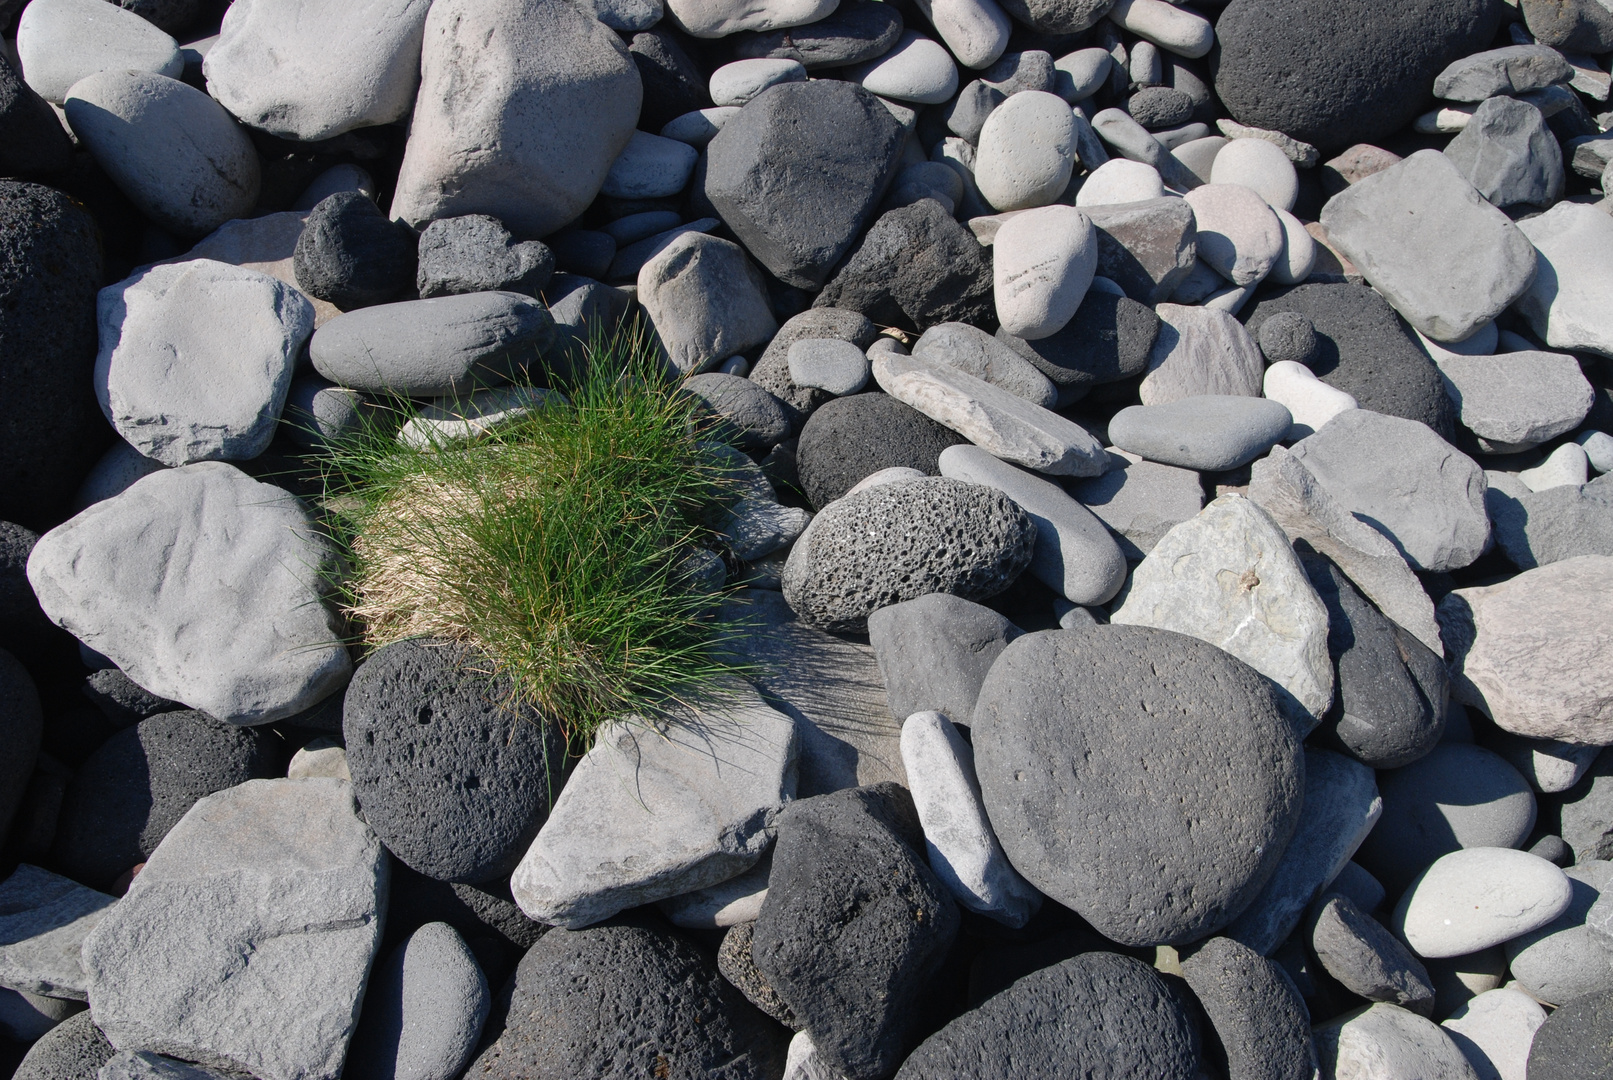 Grass between the stones